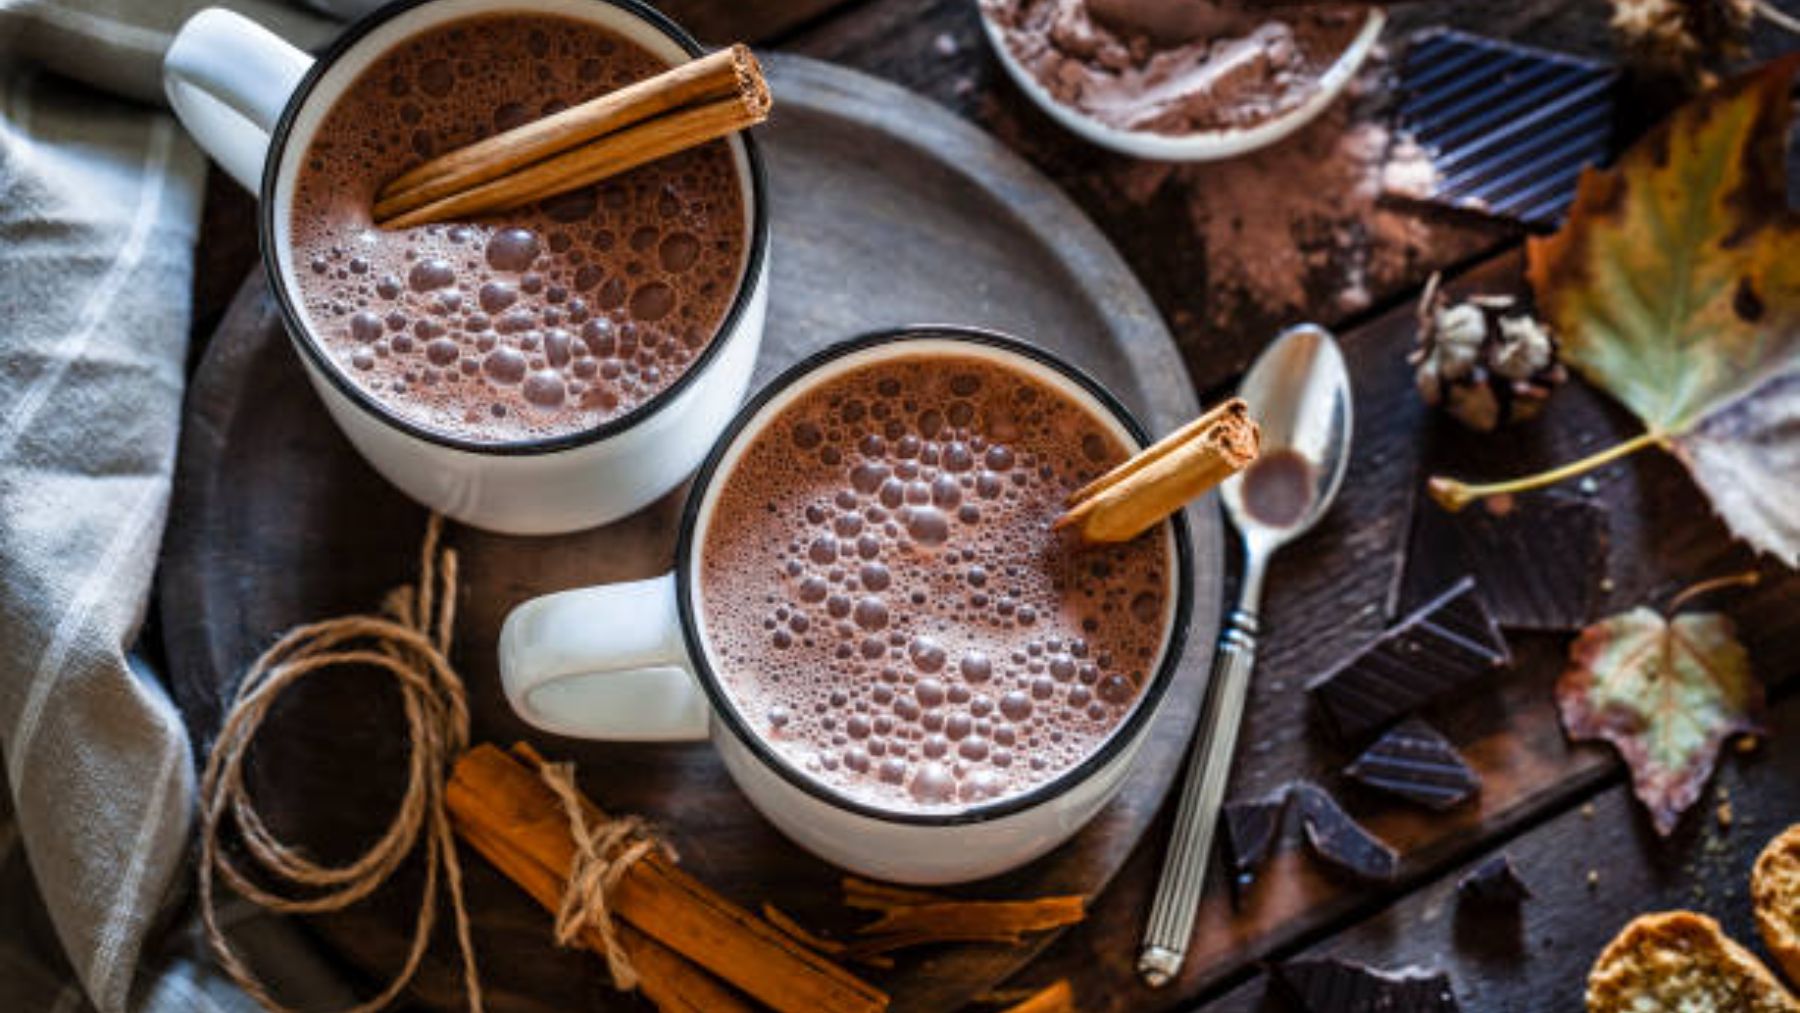 La OCU analiza el cacao en polvo de los supermercados